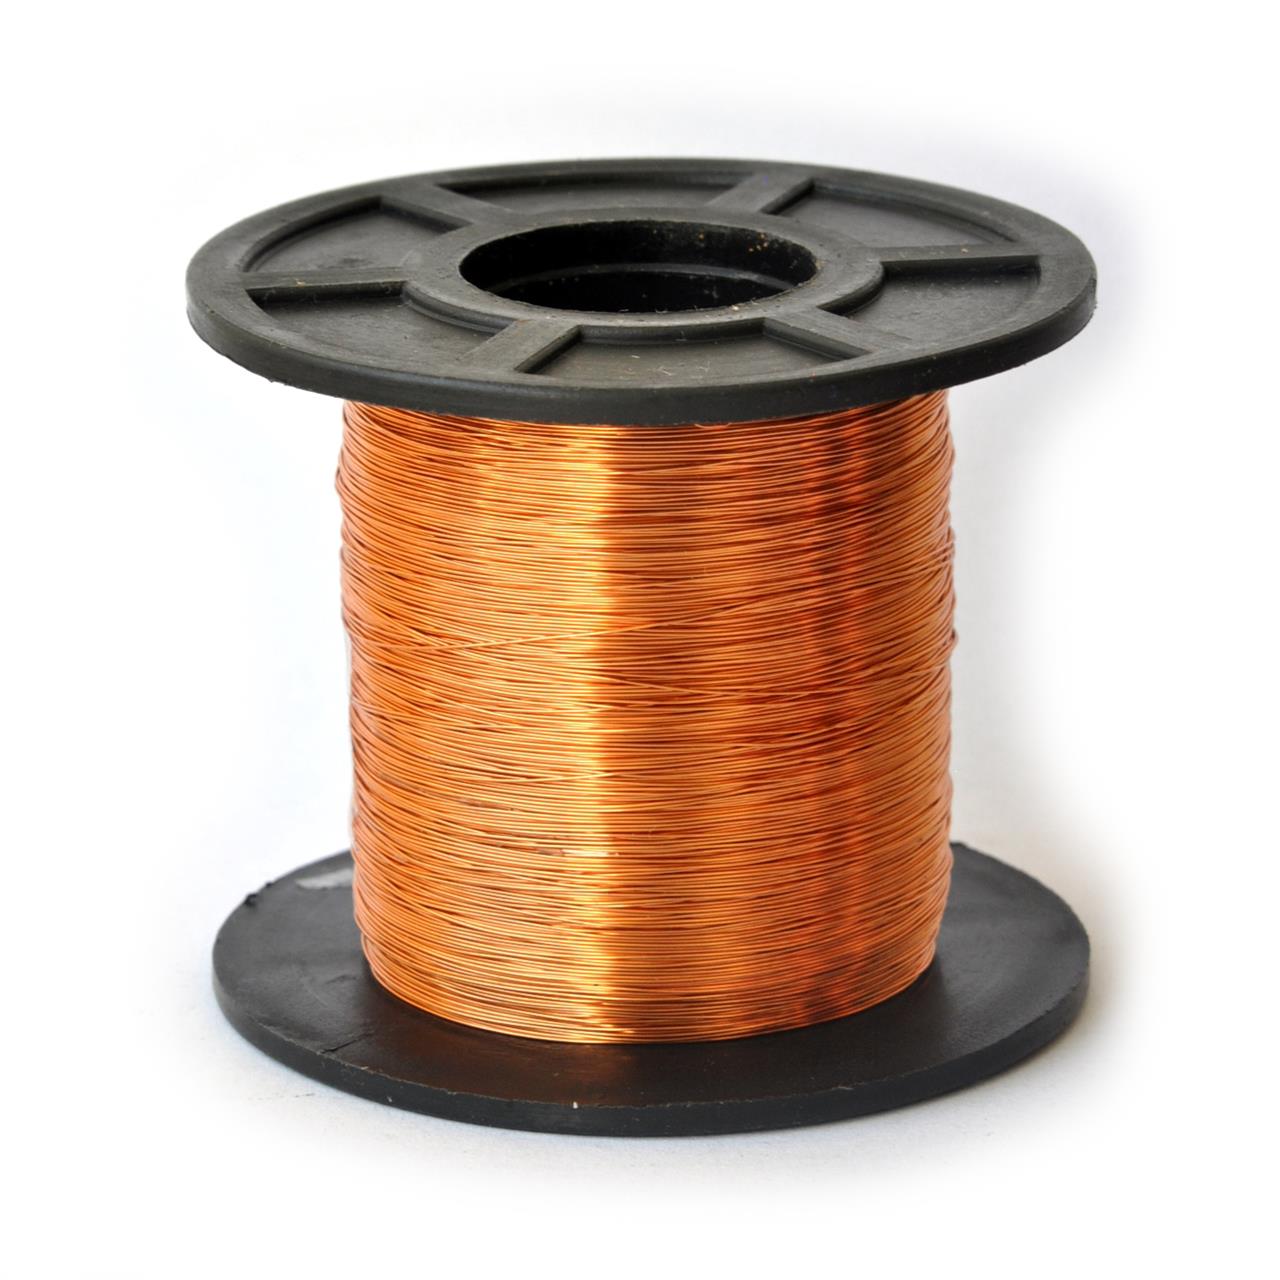 Fios de cobre esmaltados para bobinas, transformadores e indutores - Fio 30 AWG 250g